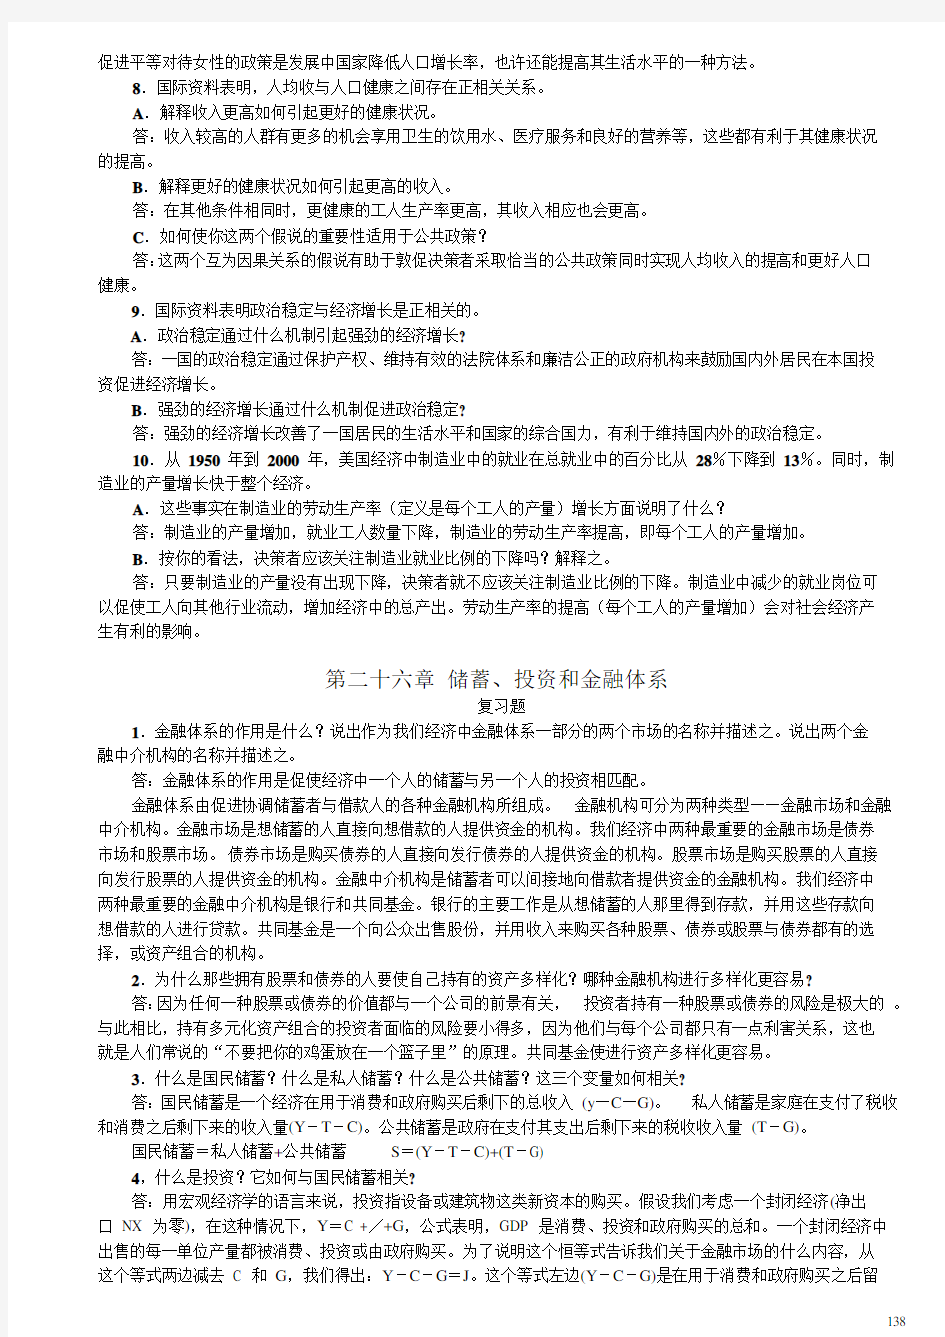 曼昆经济学原理(第四版)课后习题中文答案(3)